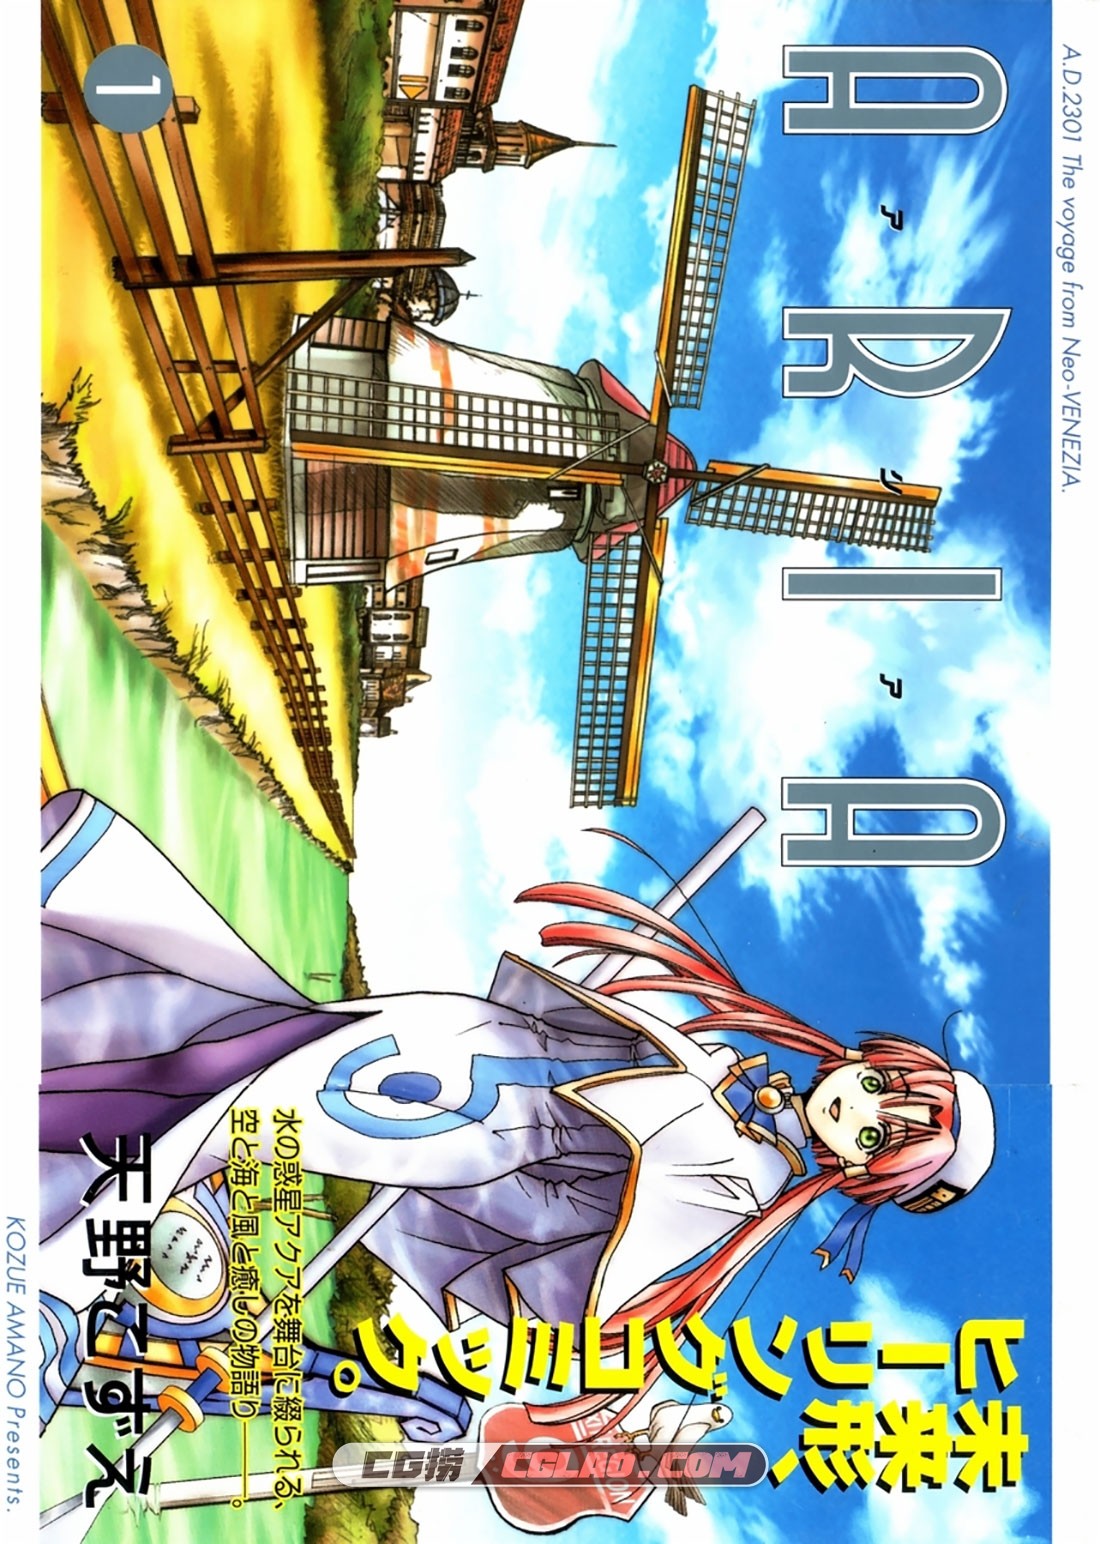 ARIA 水星领航员 天野梢 1-12卷全集完结 日语版漫画下载,001.jpg